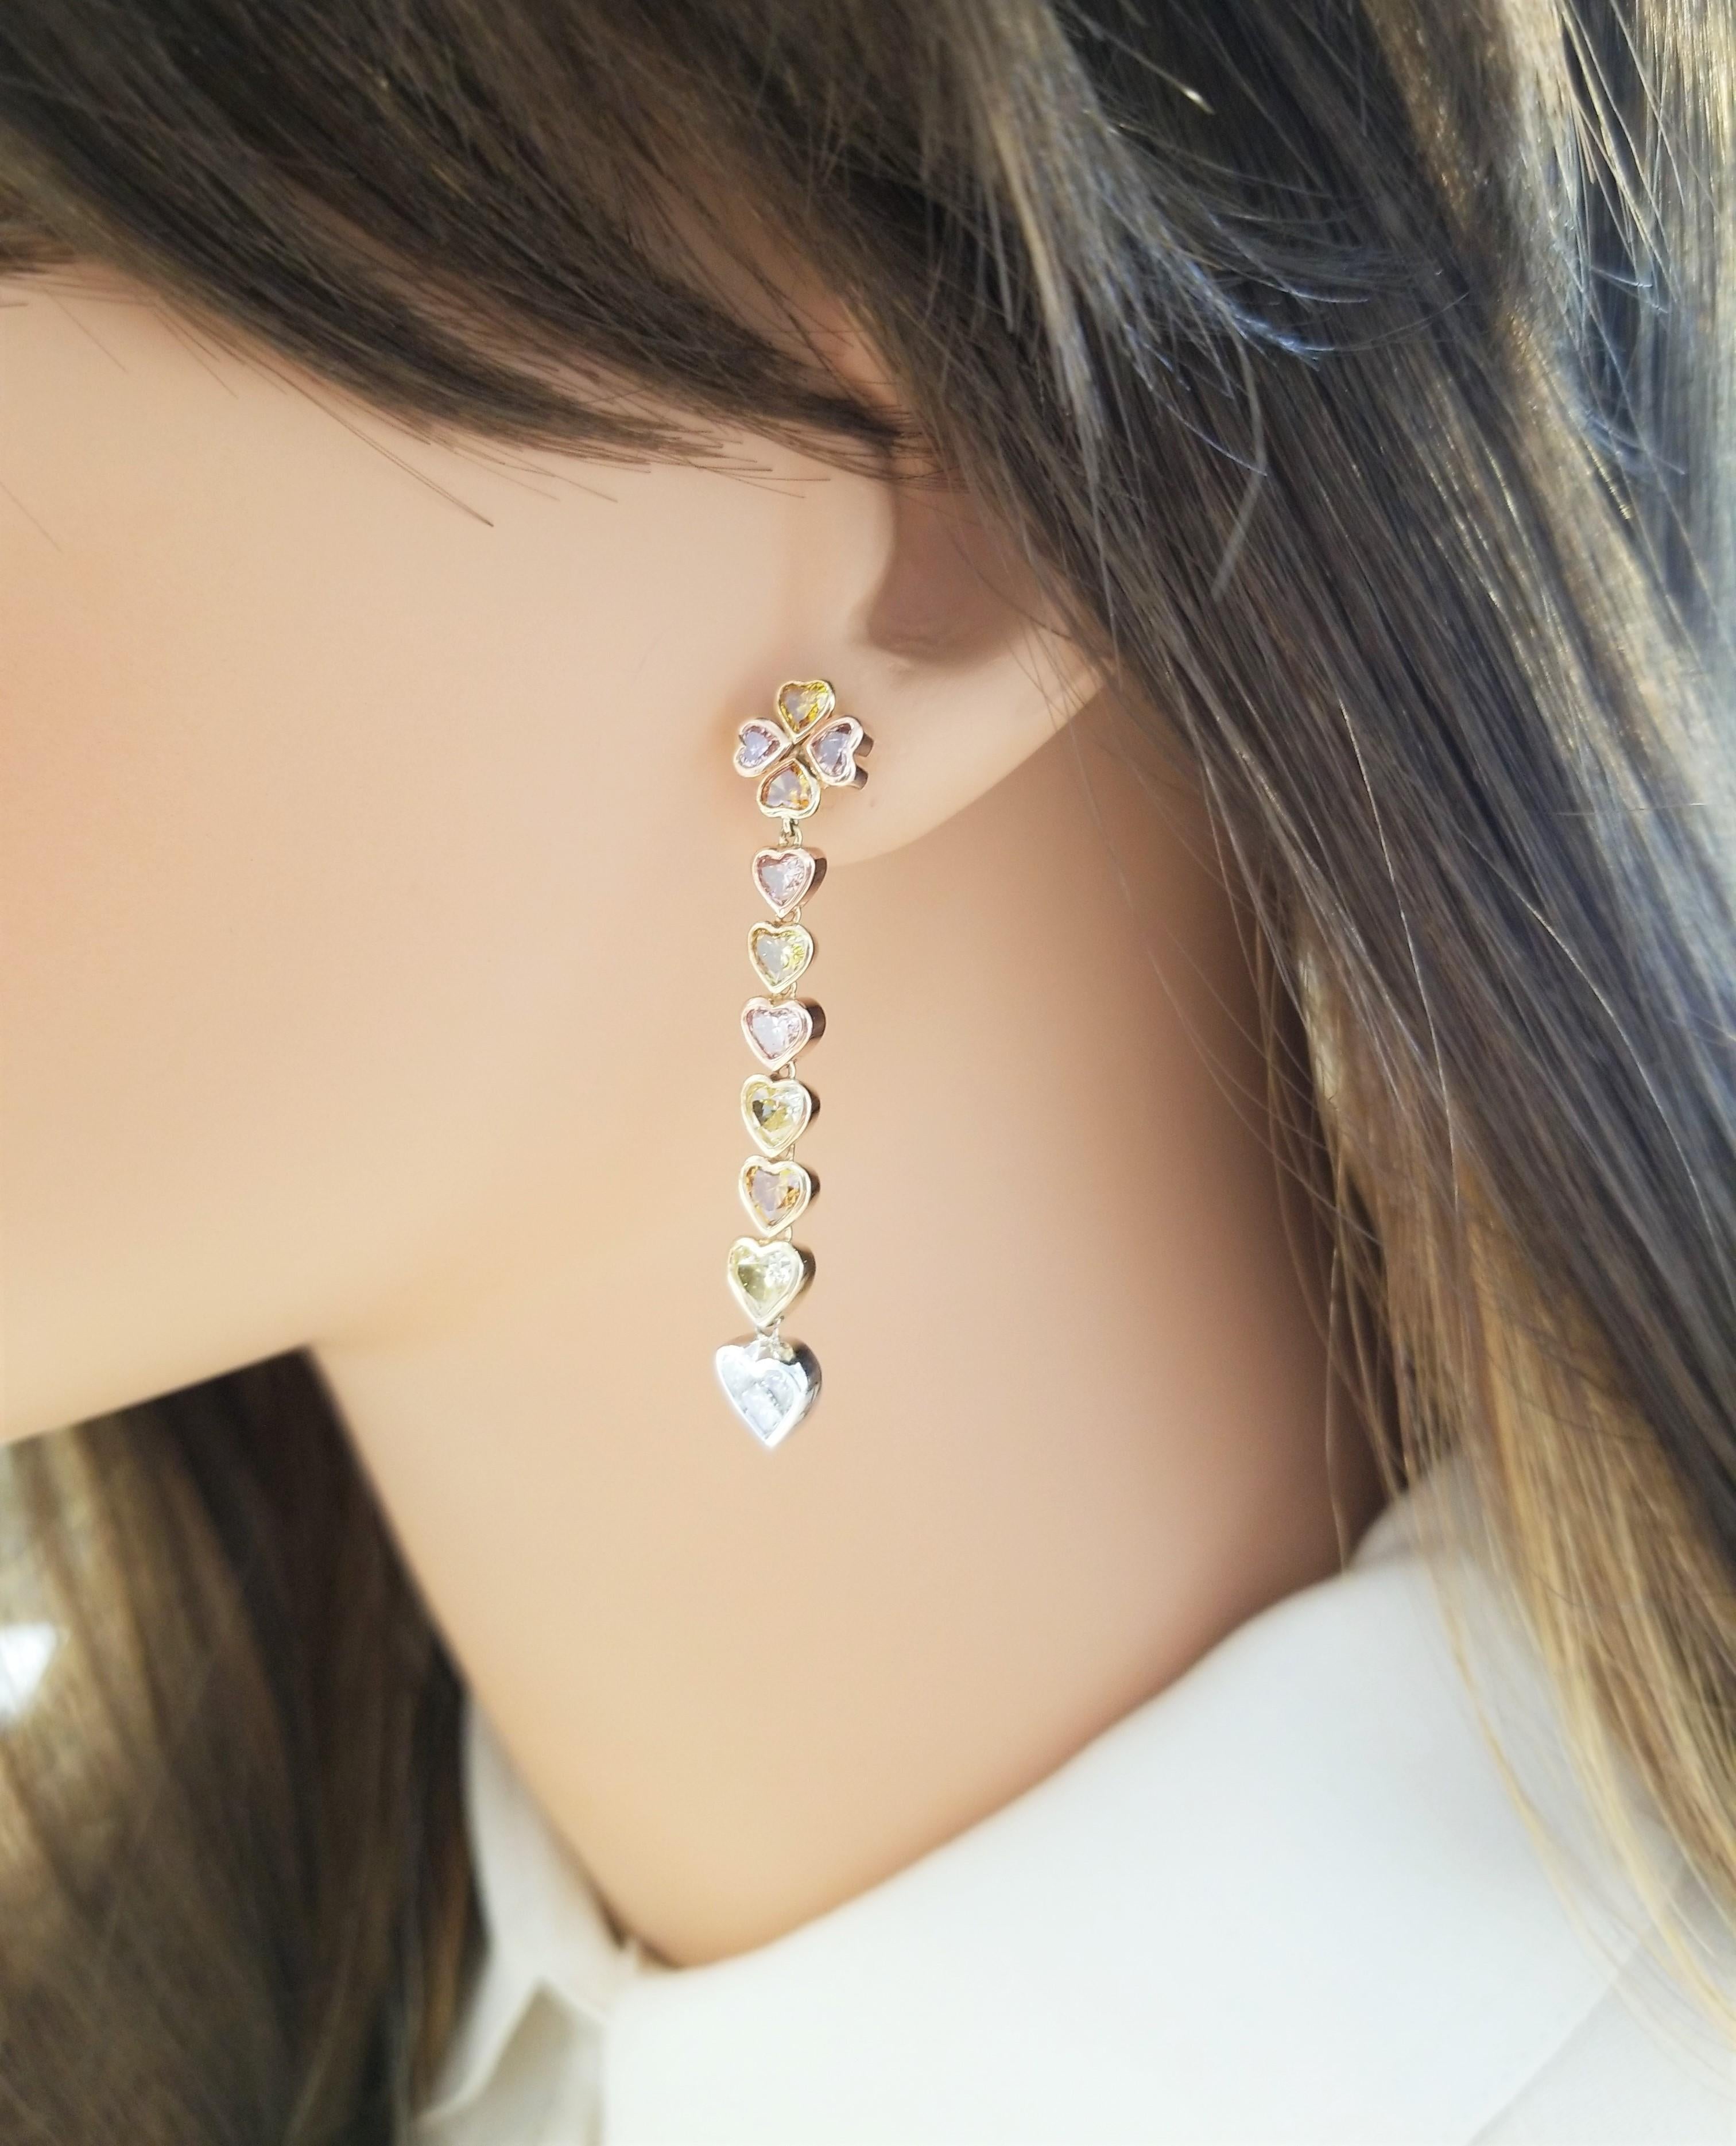 Herzen, Herzen, und noch mehr Herzen! Diese üppigen Diamantohrringe sind mit diamantenen Herzen verziert!  Die Ohrringe bestehen aus insgesamt 3,80 Karat natürlichen, farbigen, herzförmigen Diamanten in verschiedenen Farben: gelb, orange, rosa und